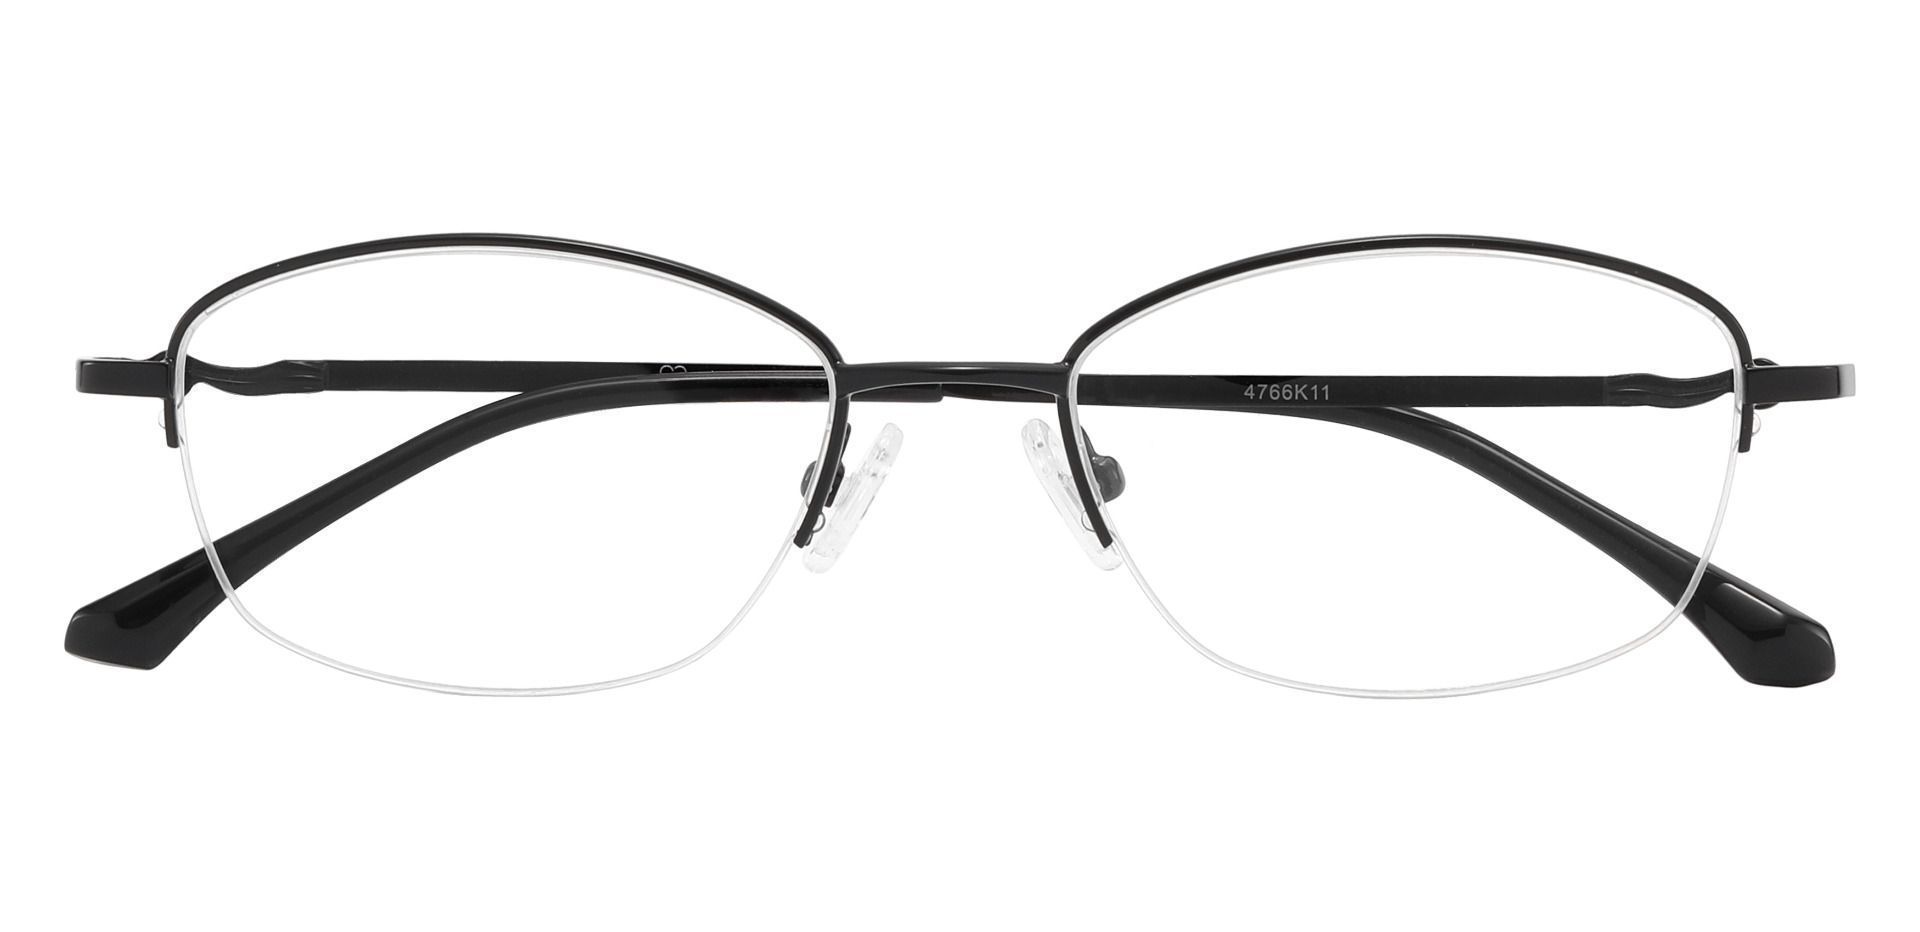 Beulah Oval Eyeglasses Frame - Black